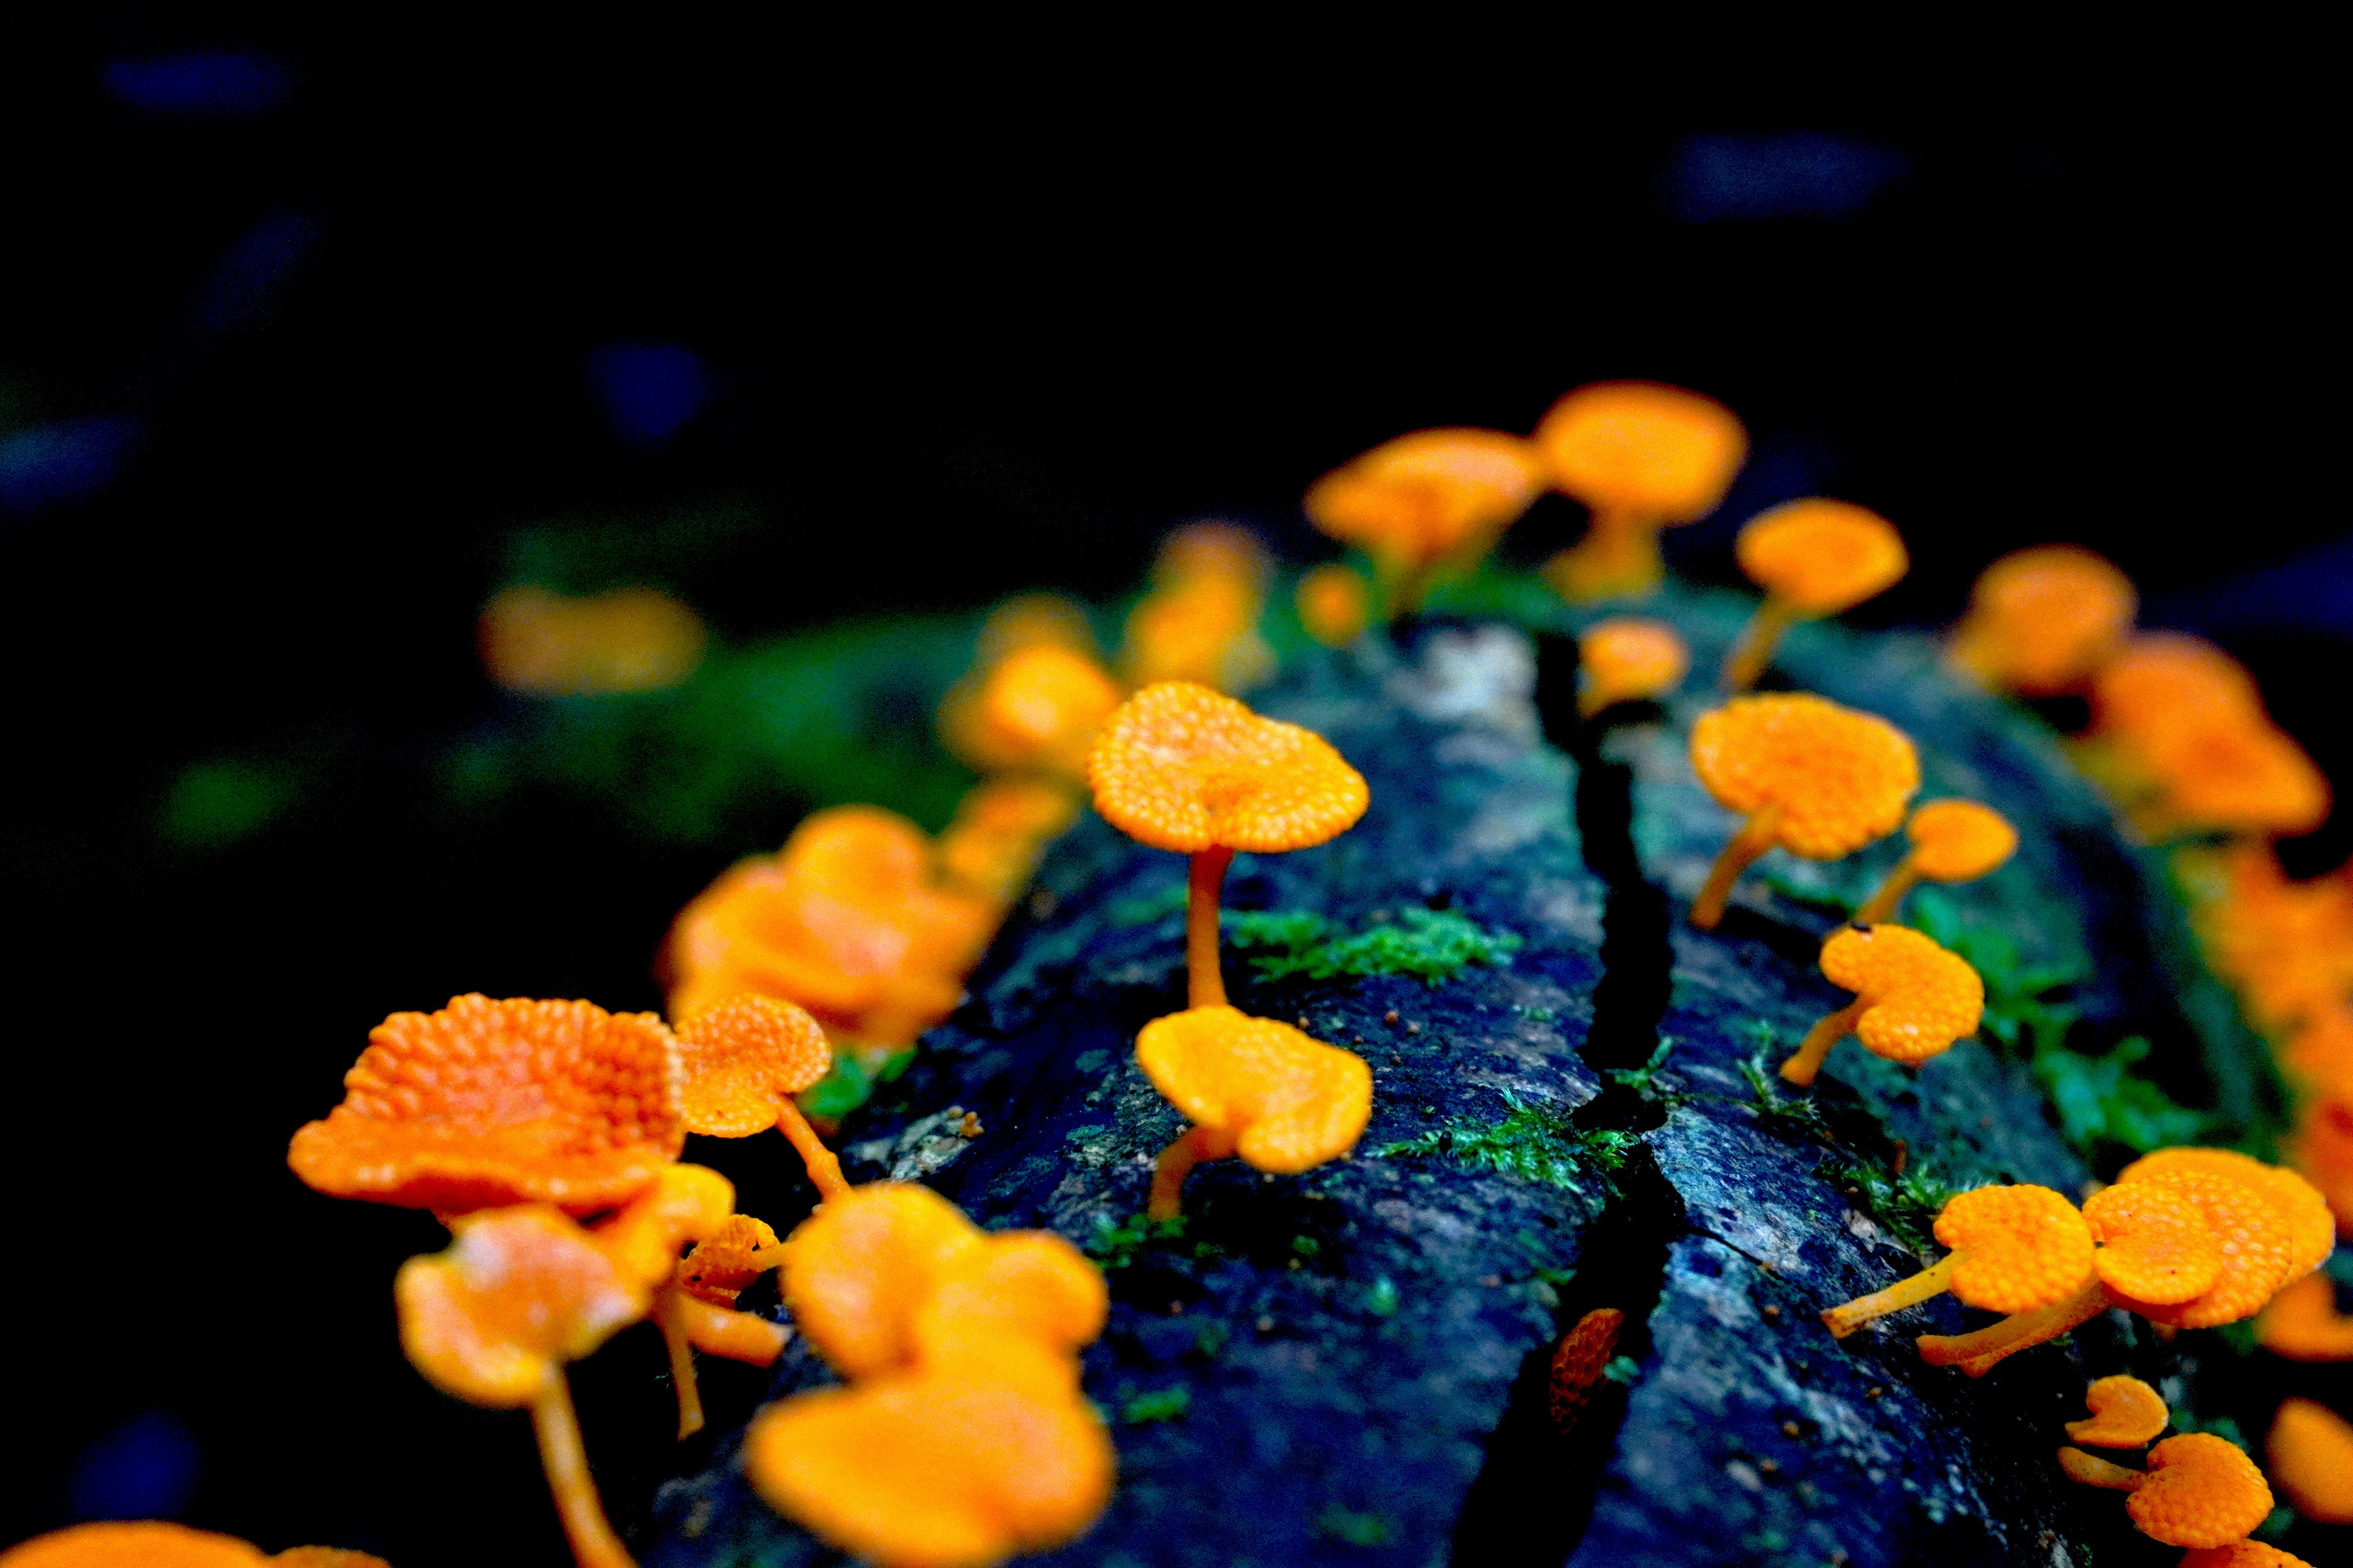 jamur pori oranye dengan spora cantik yang tumbuh di sepotong kayu mati